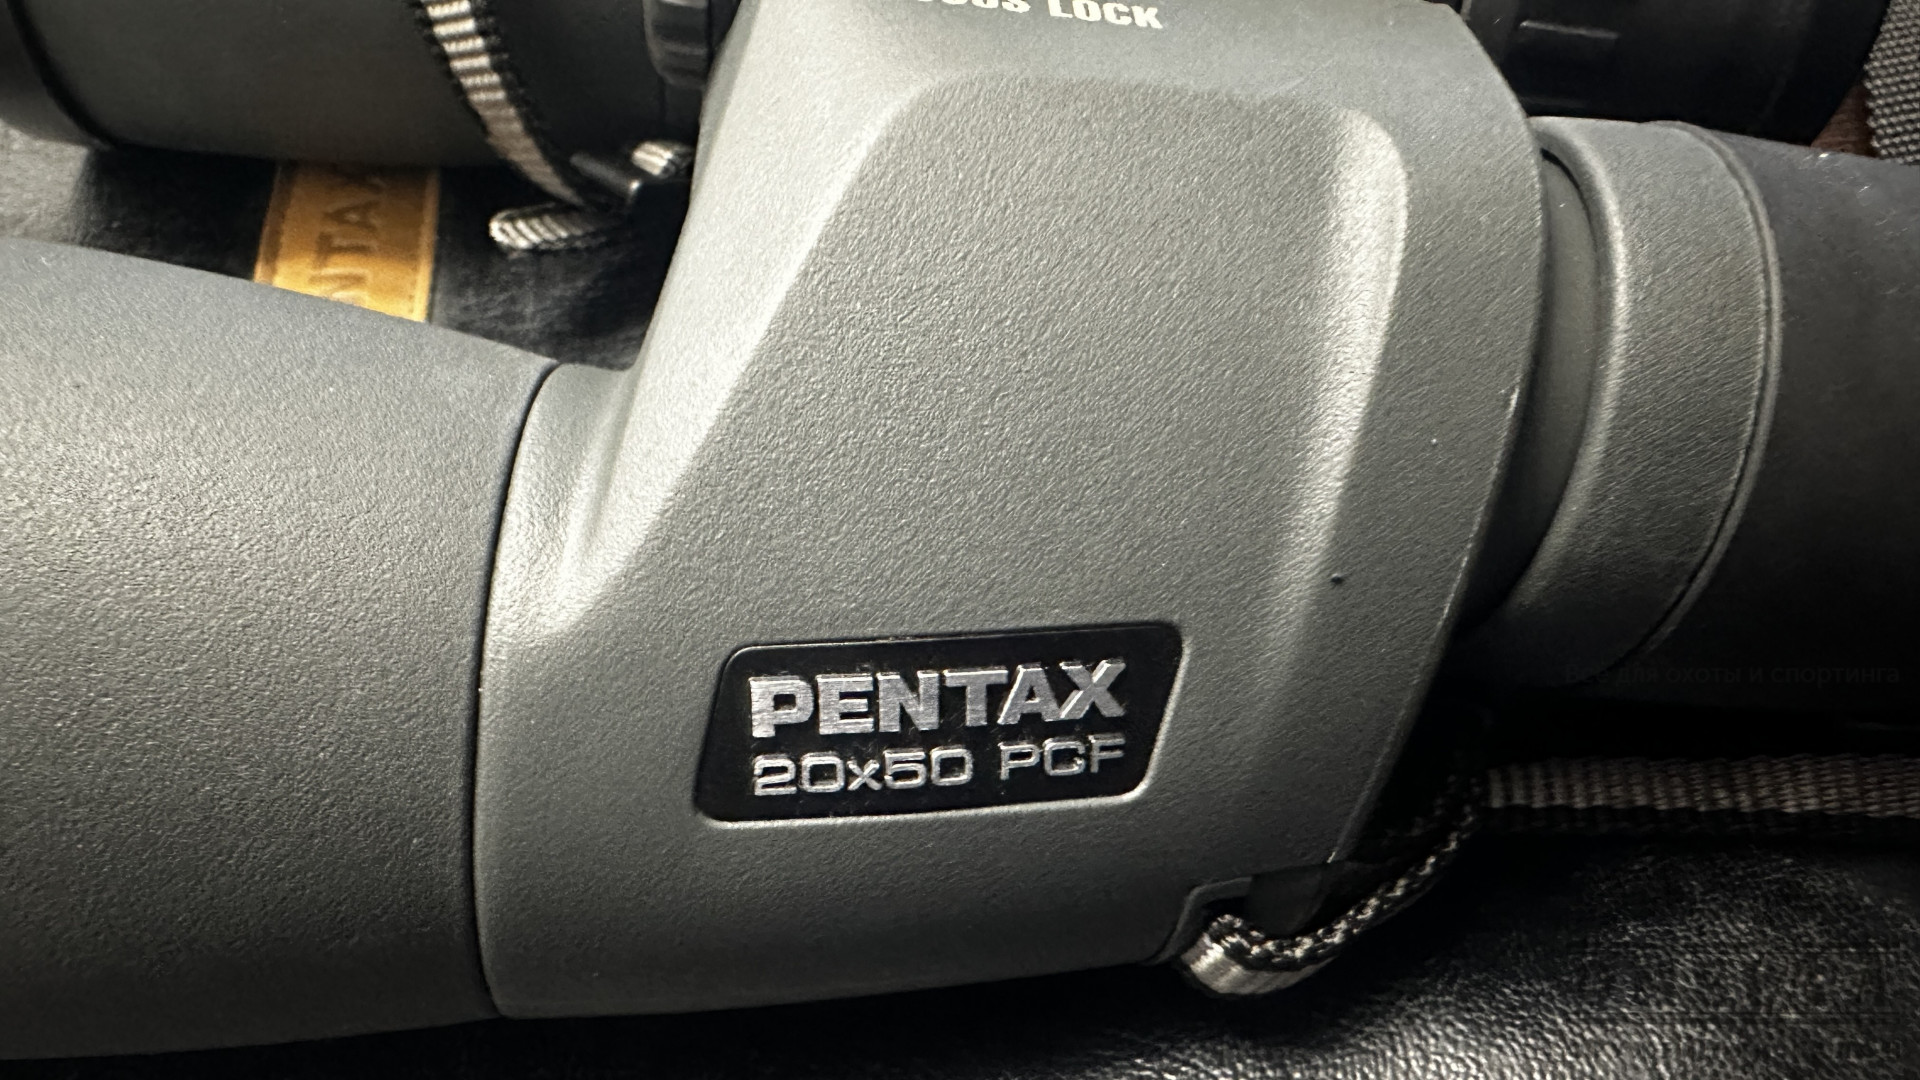 Pentax 20x50 PCF